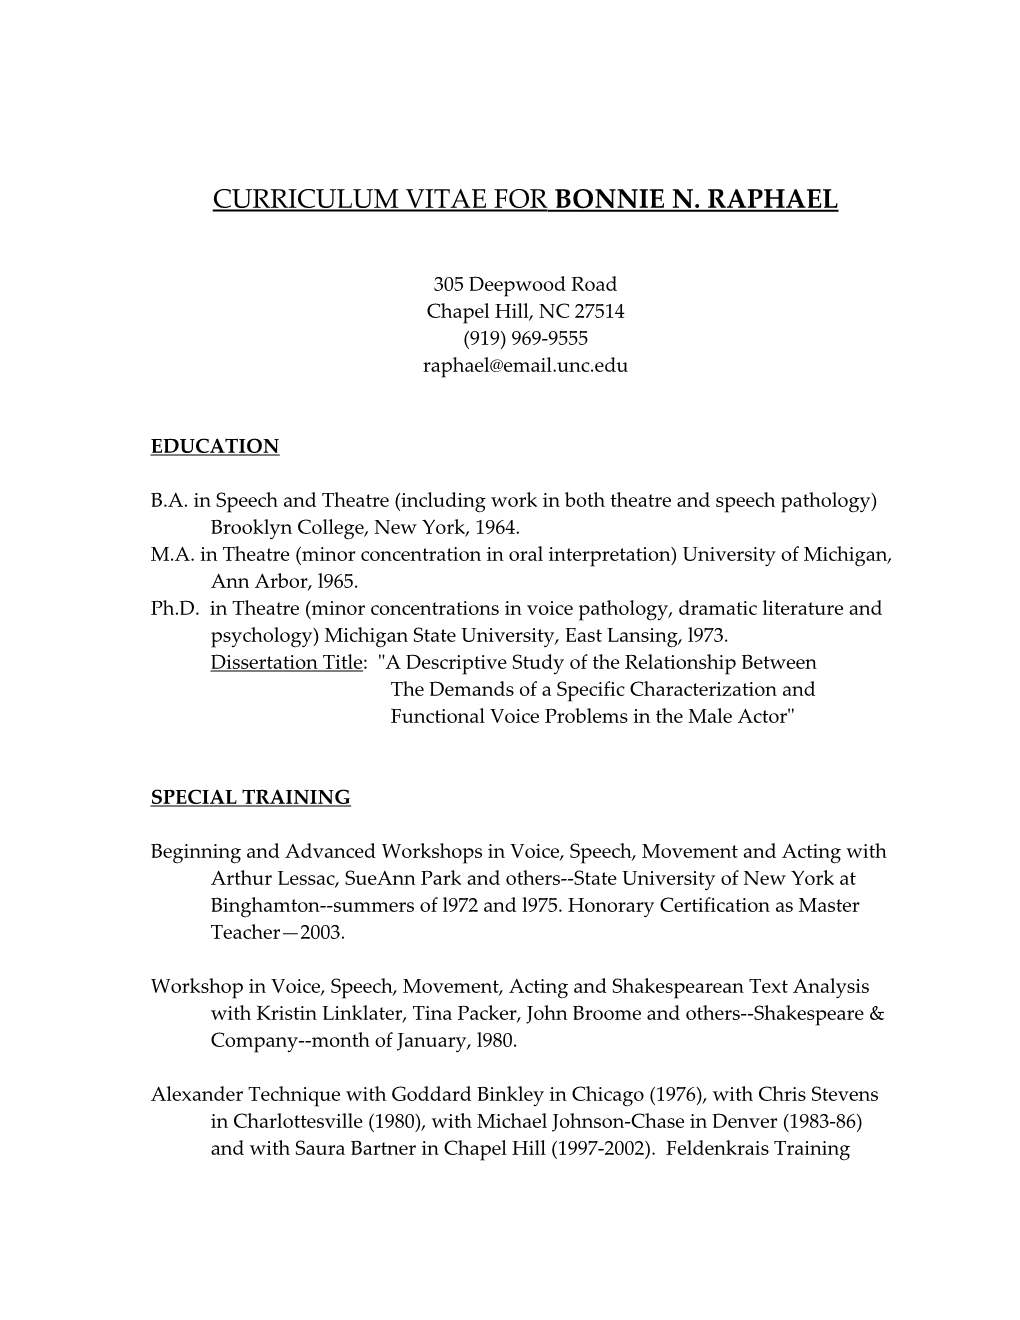 Curriculum Vitae for Bonnie N. Raphael